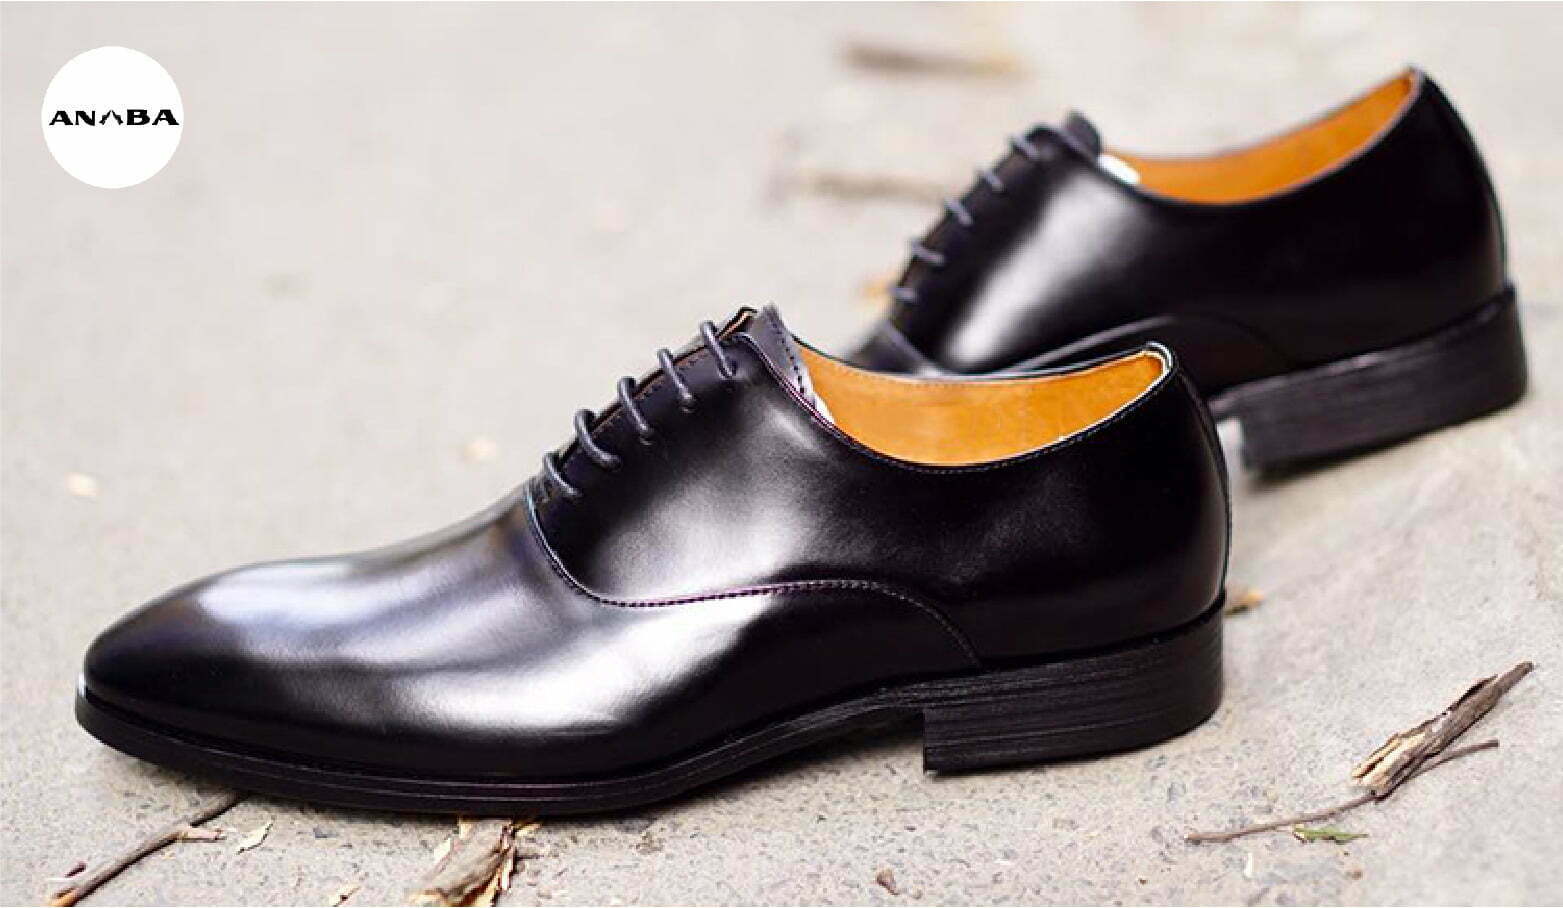 Giày tây Oxford là mẫu mà quý ông nào cũng ưa thích